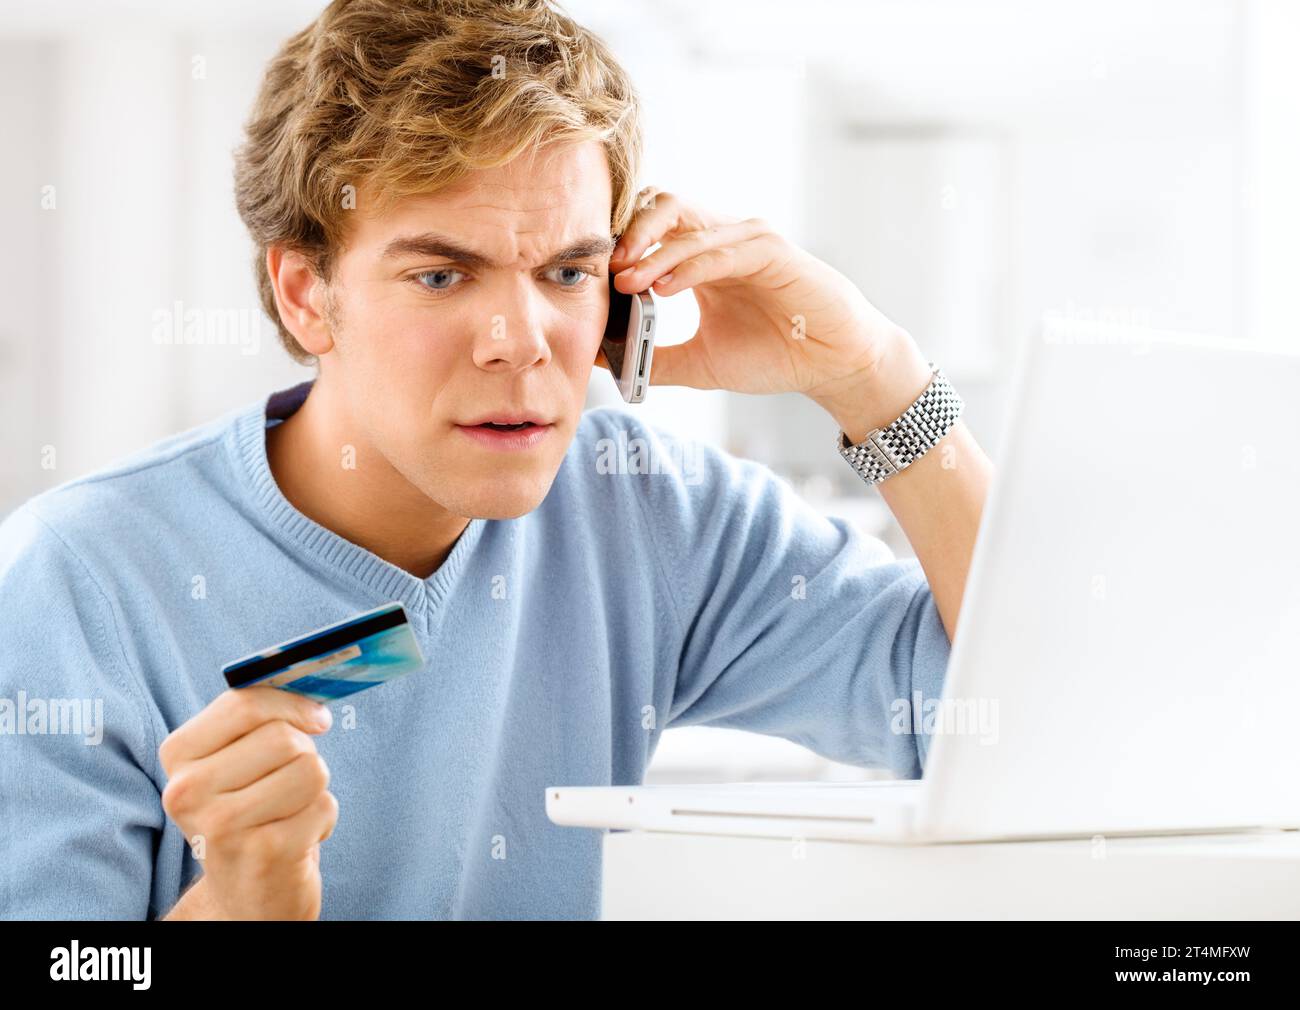 Le système de paiement en ligne est cassé. un jeune homme faisant un appel téléphonique en colère tout en effectuant des paiements en ligne. Banque D'Images